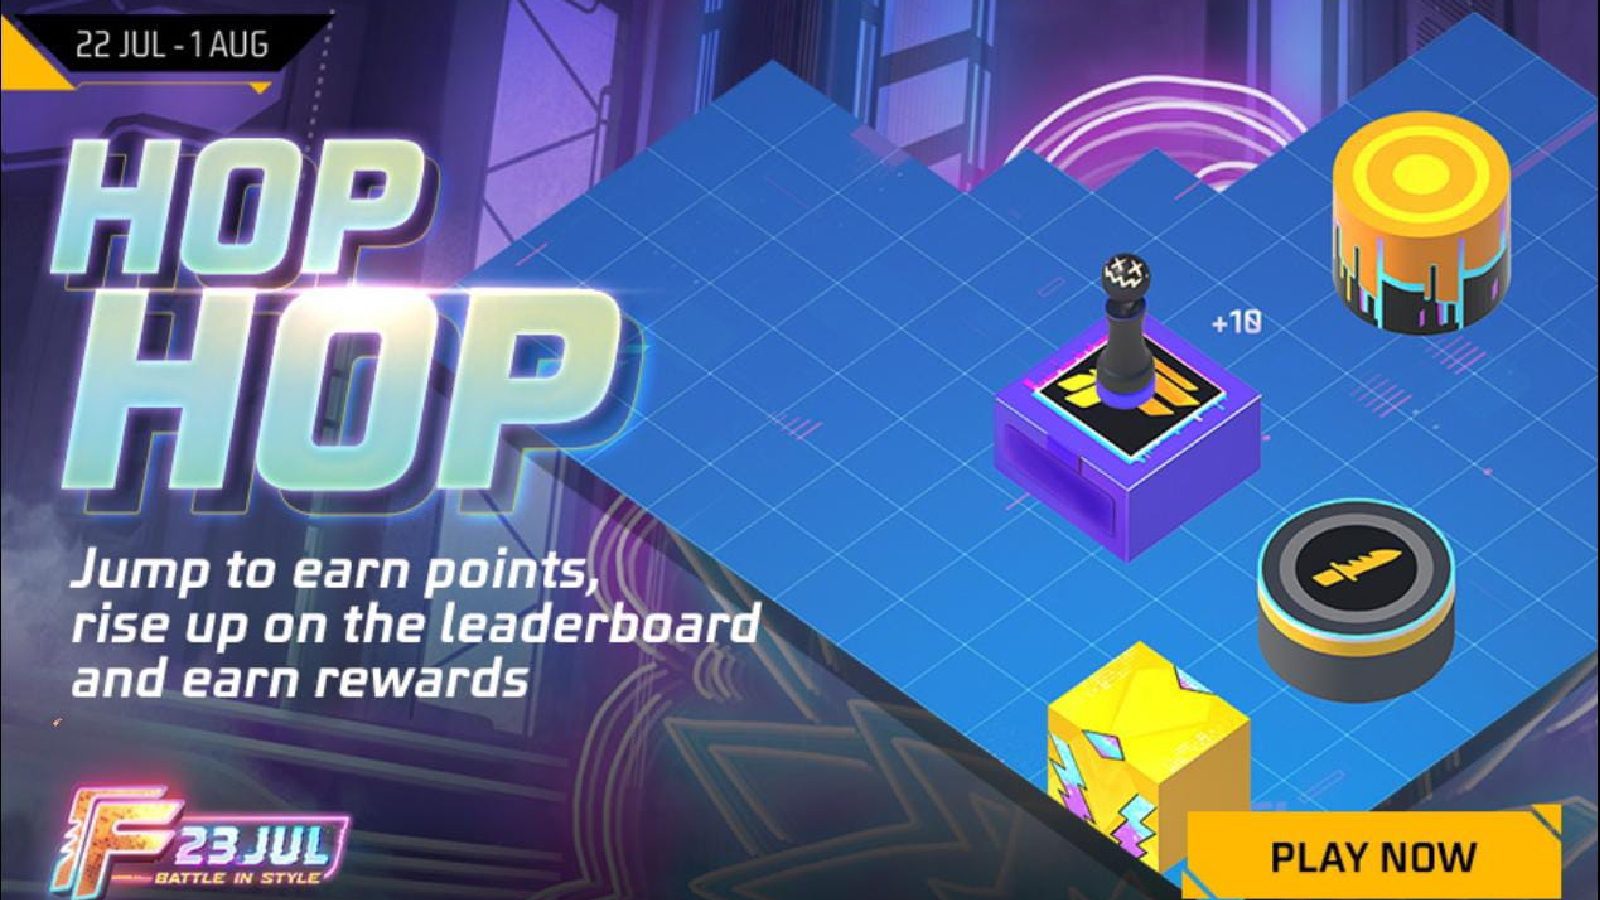 Бесплатная мини-игра Fire Hop Hop: получите шкуру питомца, эмоции и другие бесплатные награды.